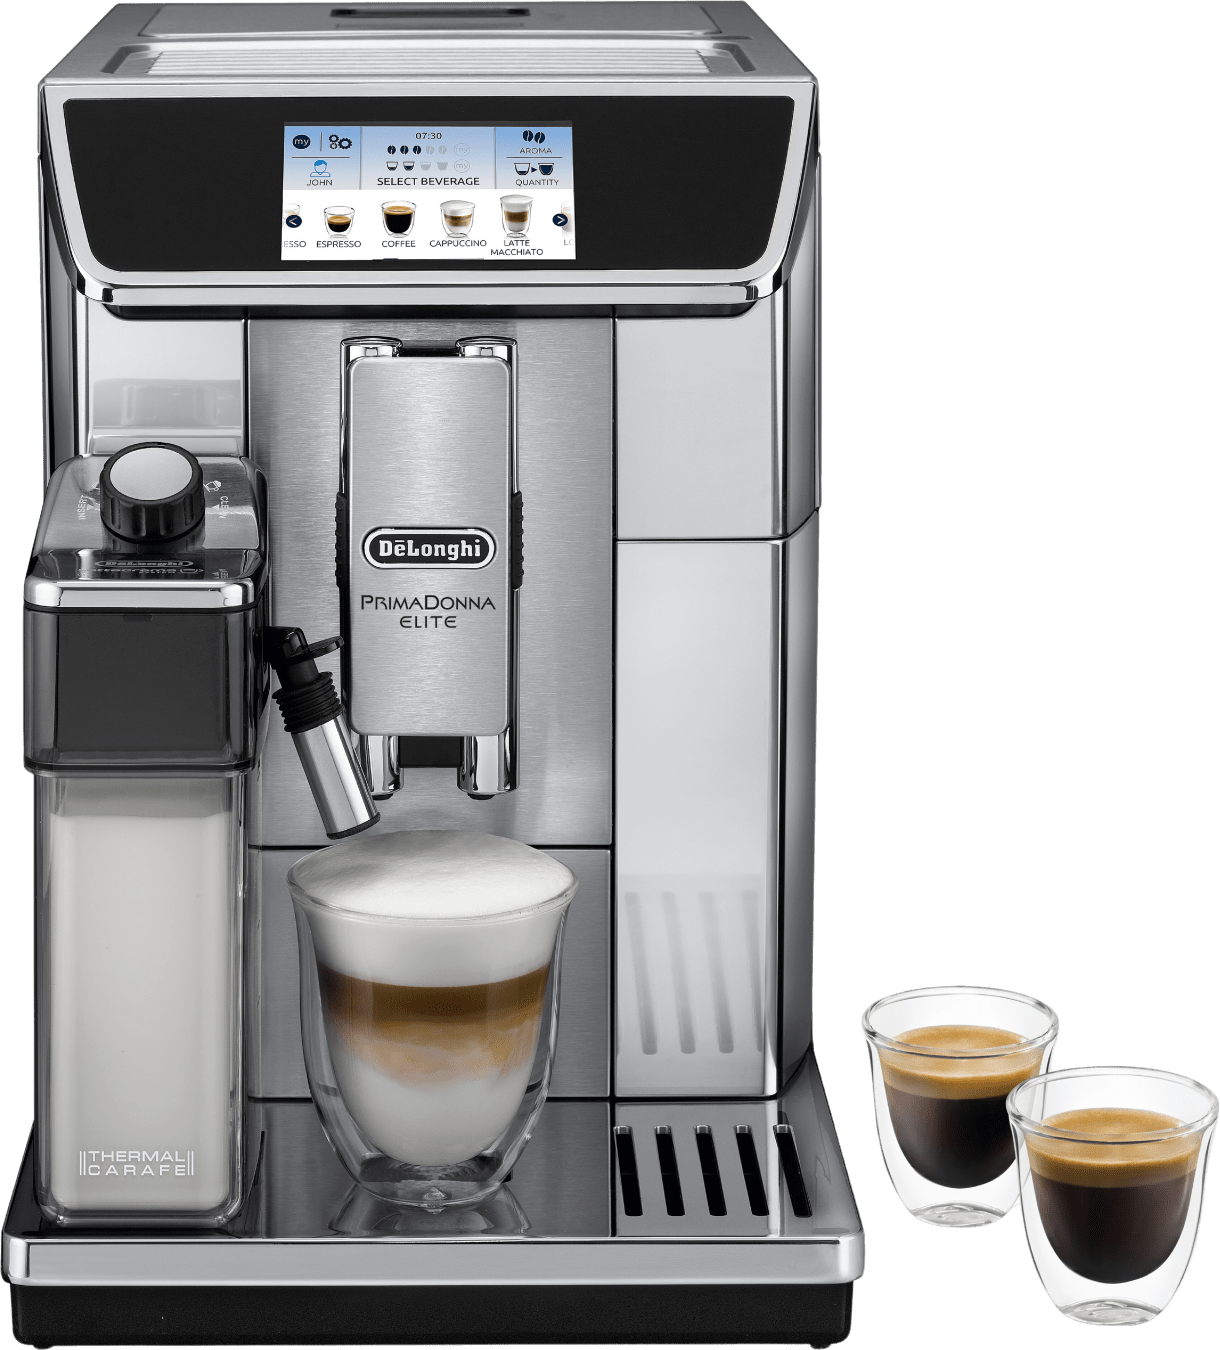 De’Longhi ECAM 656.75.MS koffiezetapparaat Volledig automatisch Espressomachine 2 l